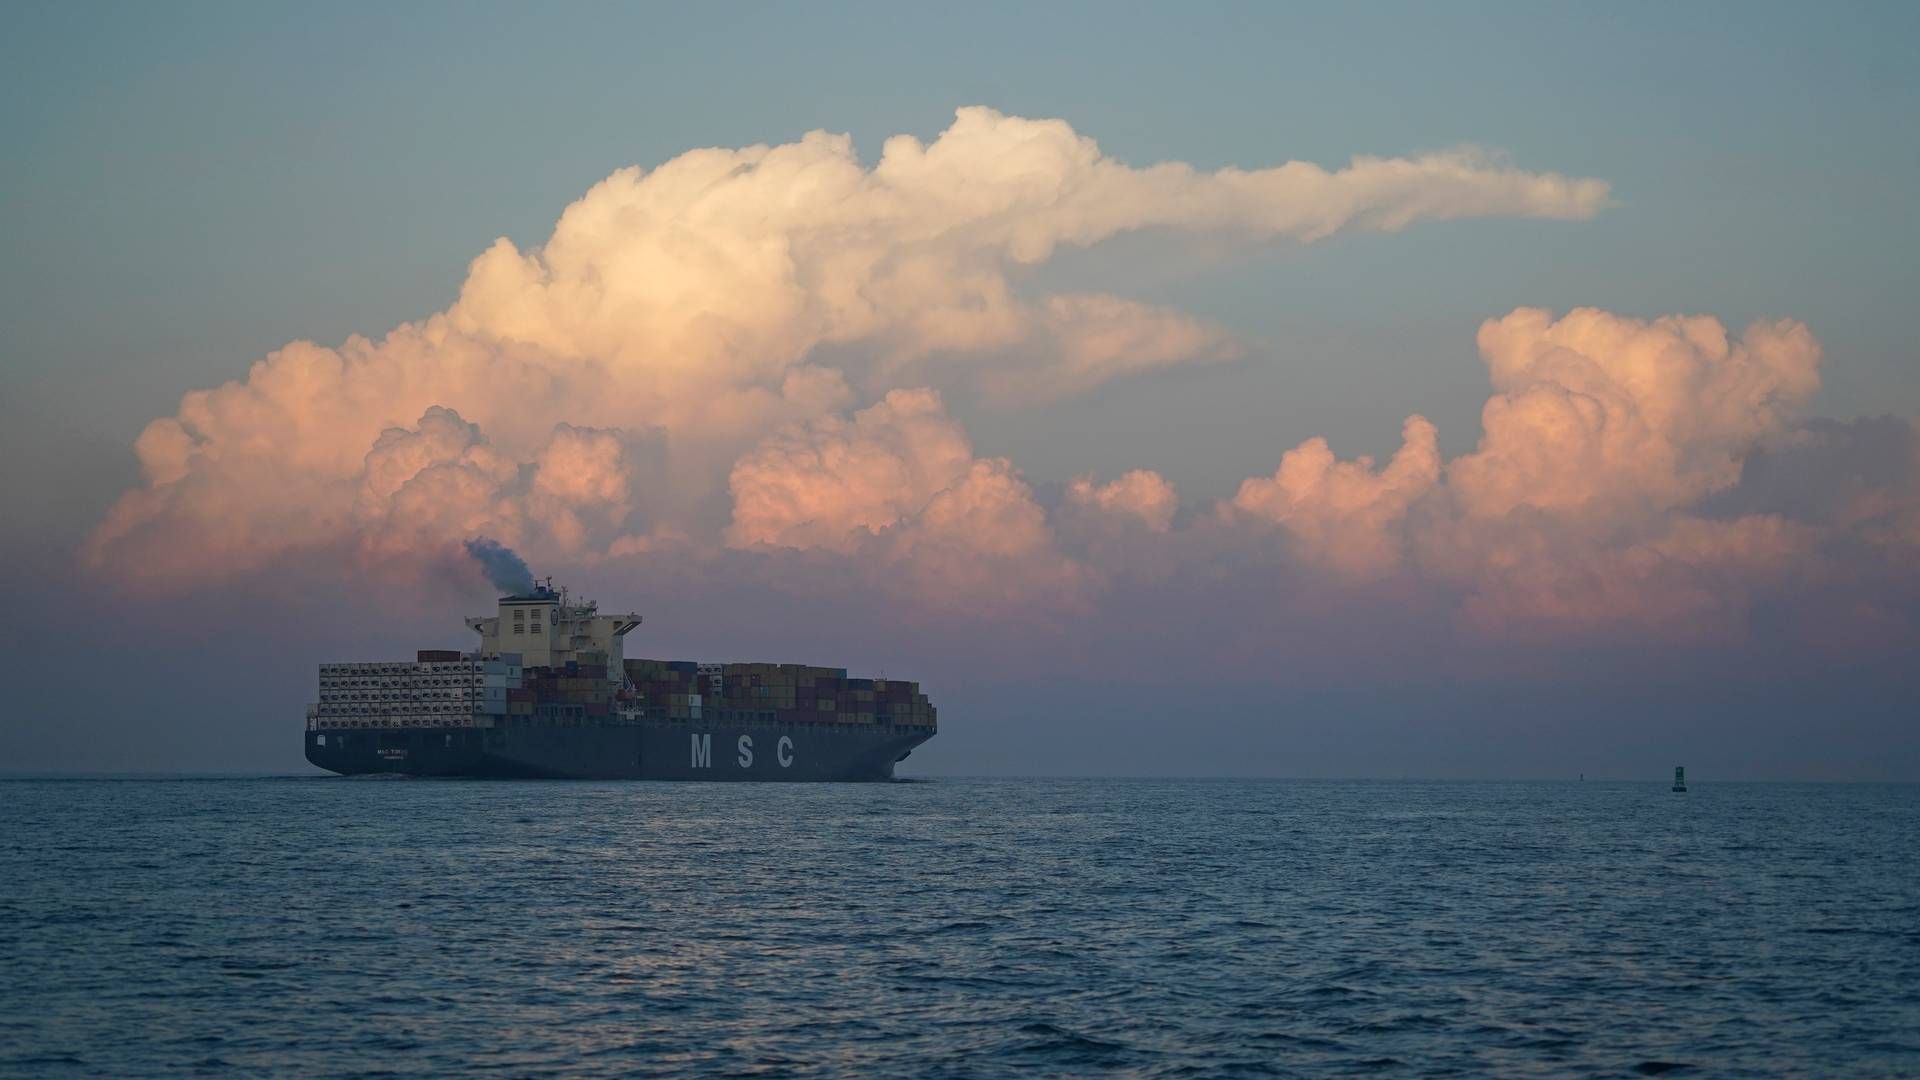 MSC har overhalet Mærsk som verdens største rederi efter at have opkøbt mange brugte skibe i 2020 og 2021. | Foto: Aaron Jackson/AP/Ritzau Scanpix